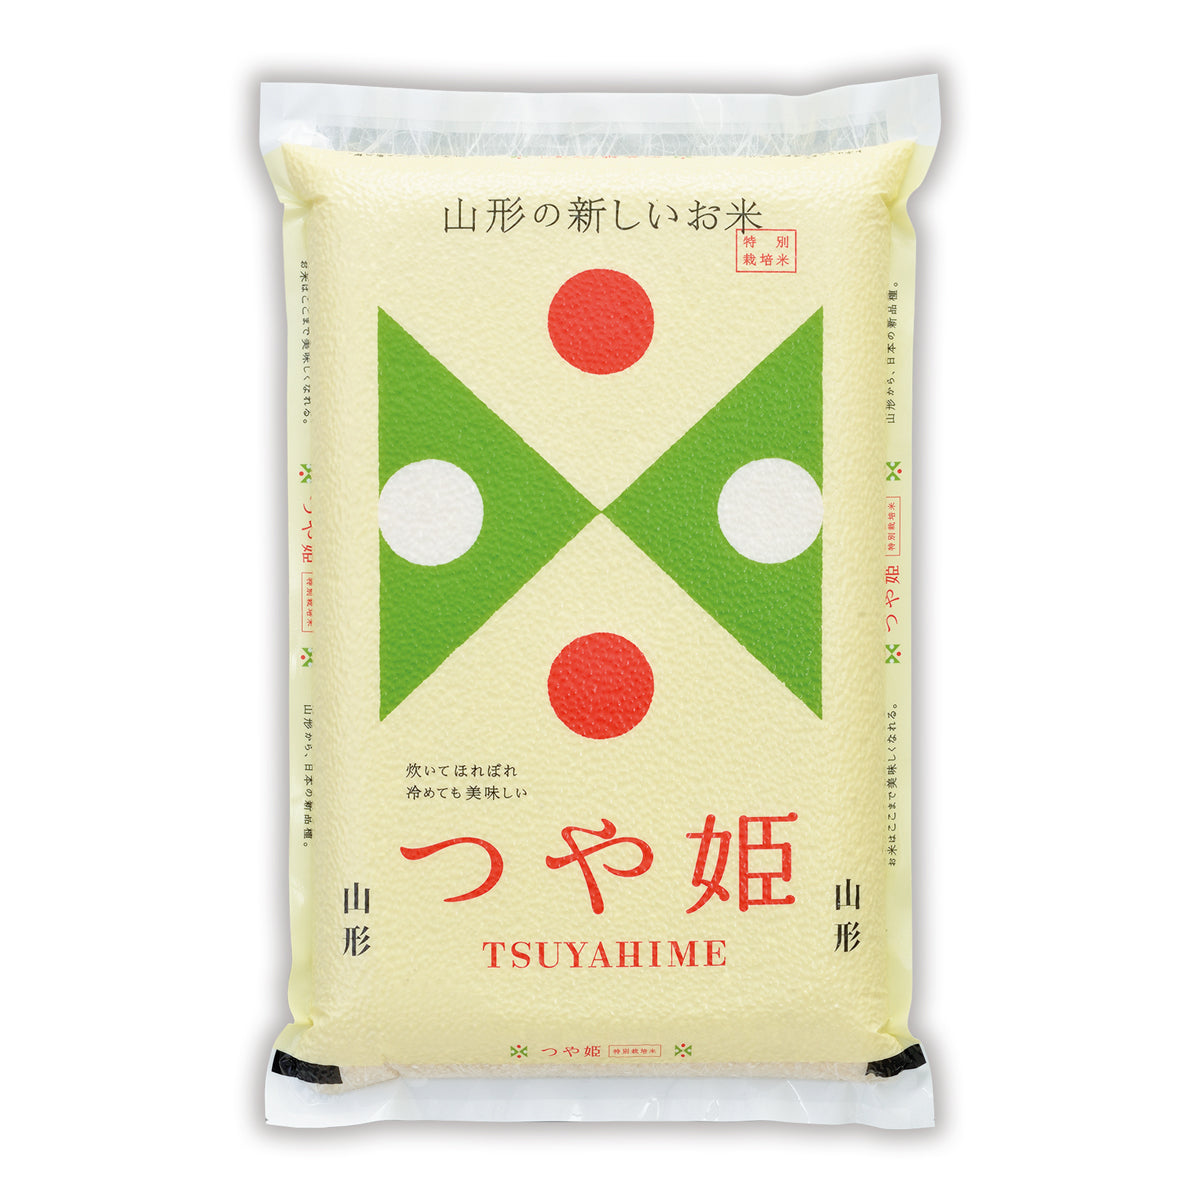 Yamagata Tsuyahime Brown Rice